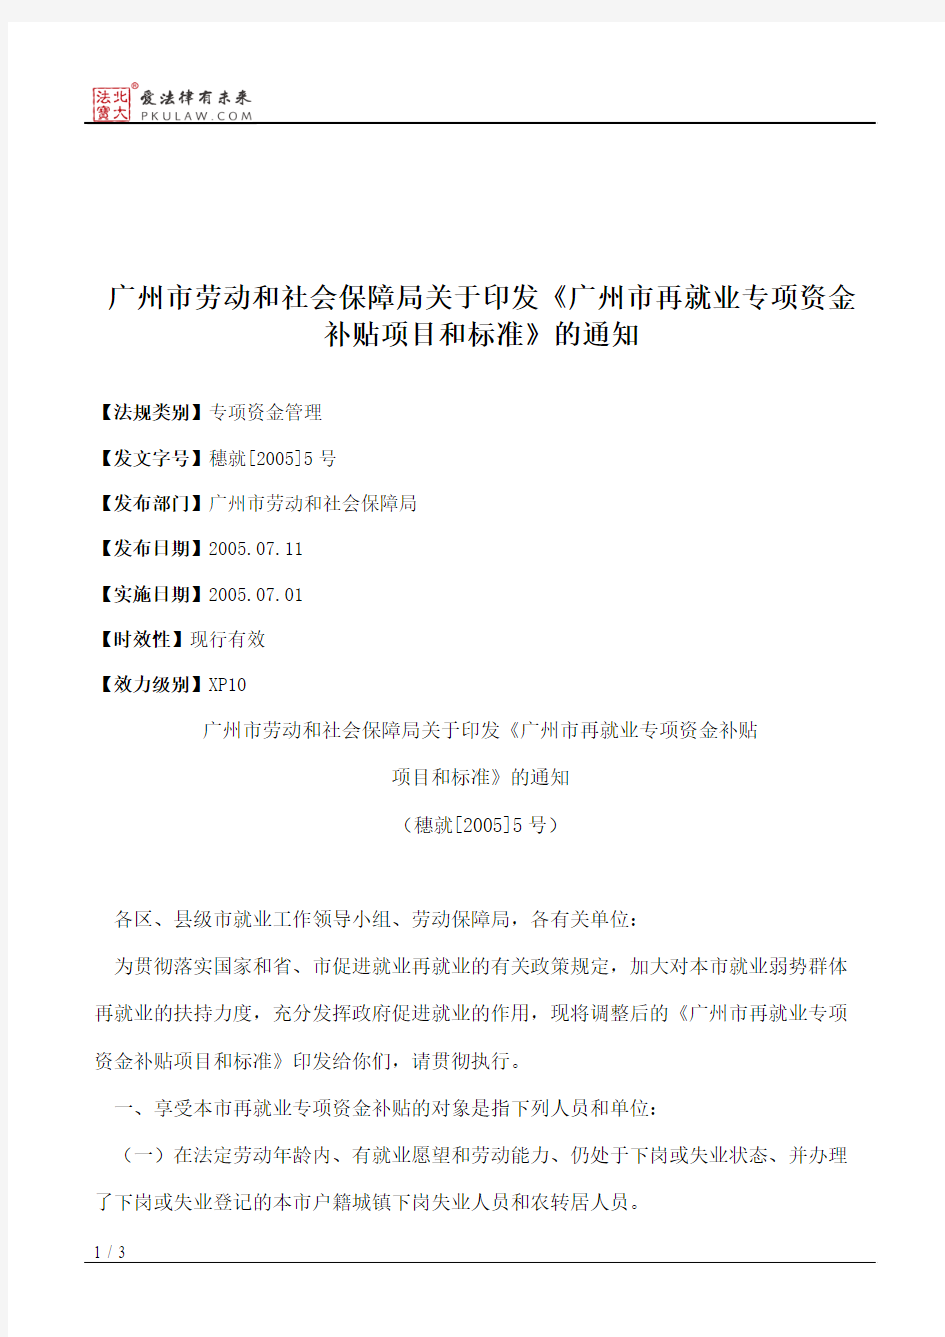 广州市劳动和社会保障局关于印发《广州市再就业专项资金补贴项目